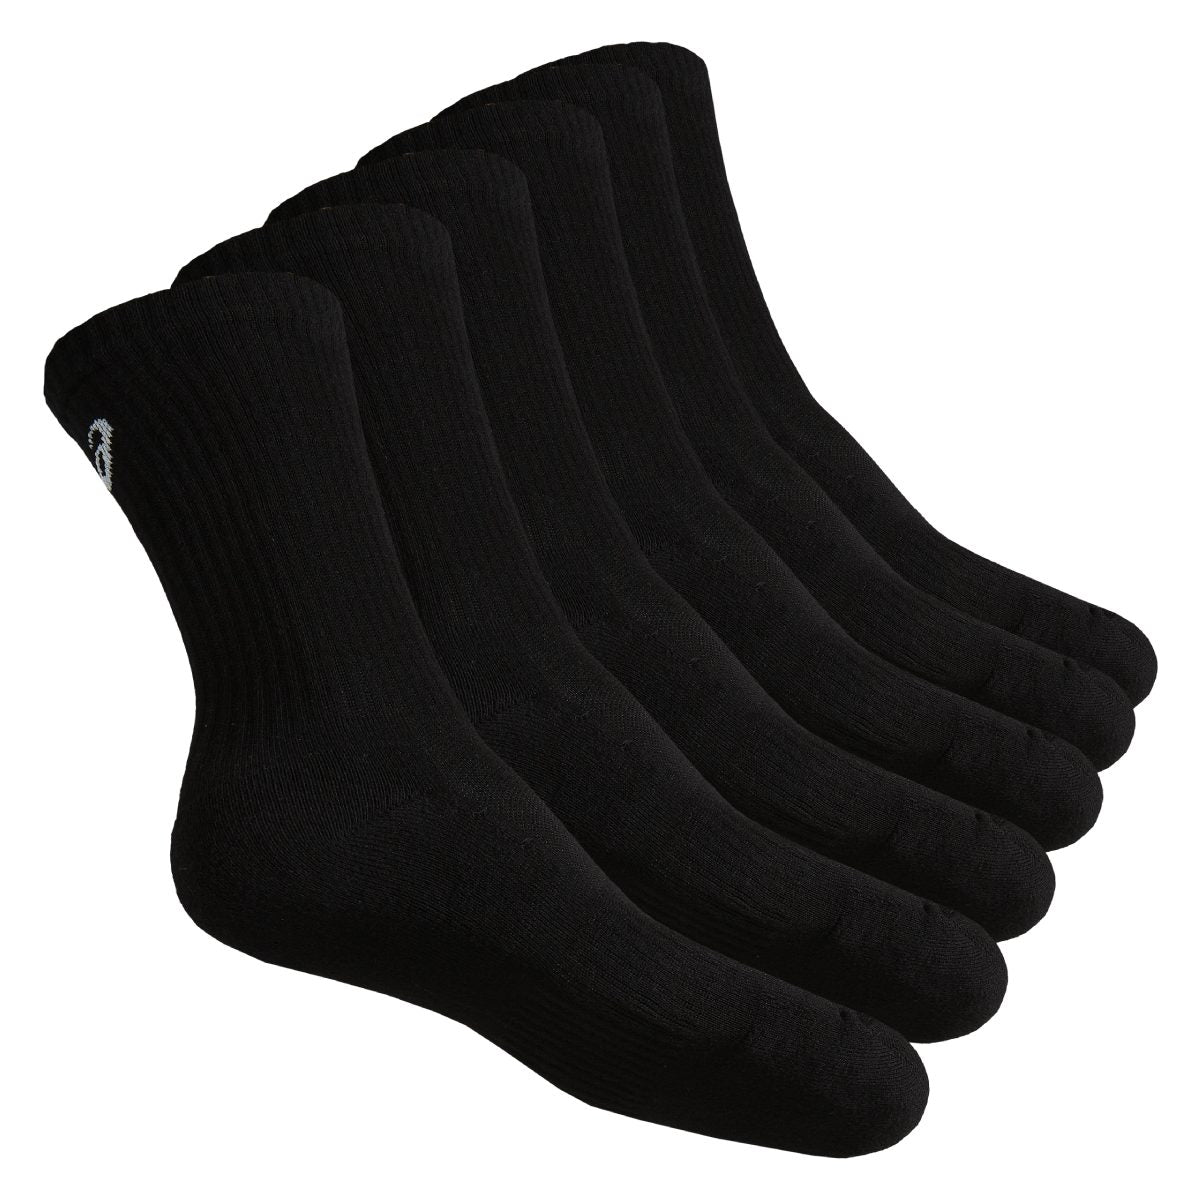 Asics 6Pkk Crew Sock Black גרבי גברים אסיקס